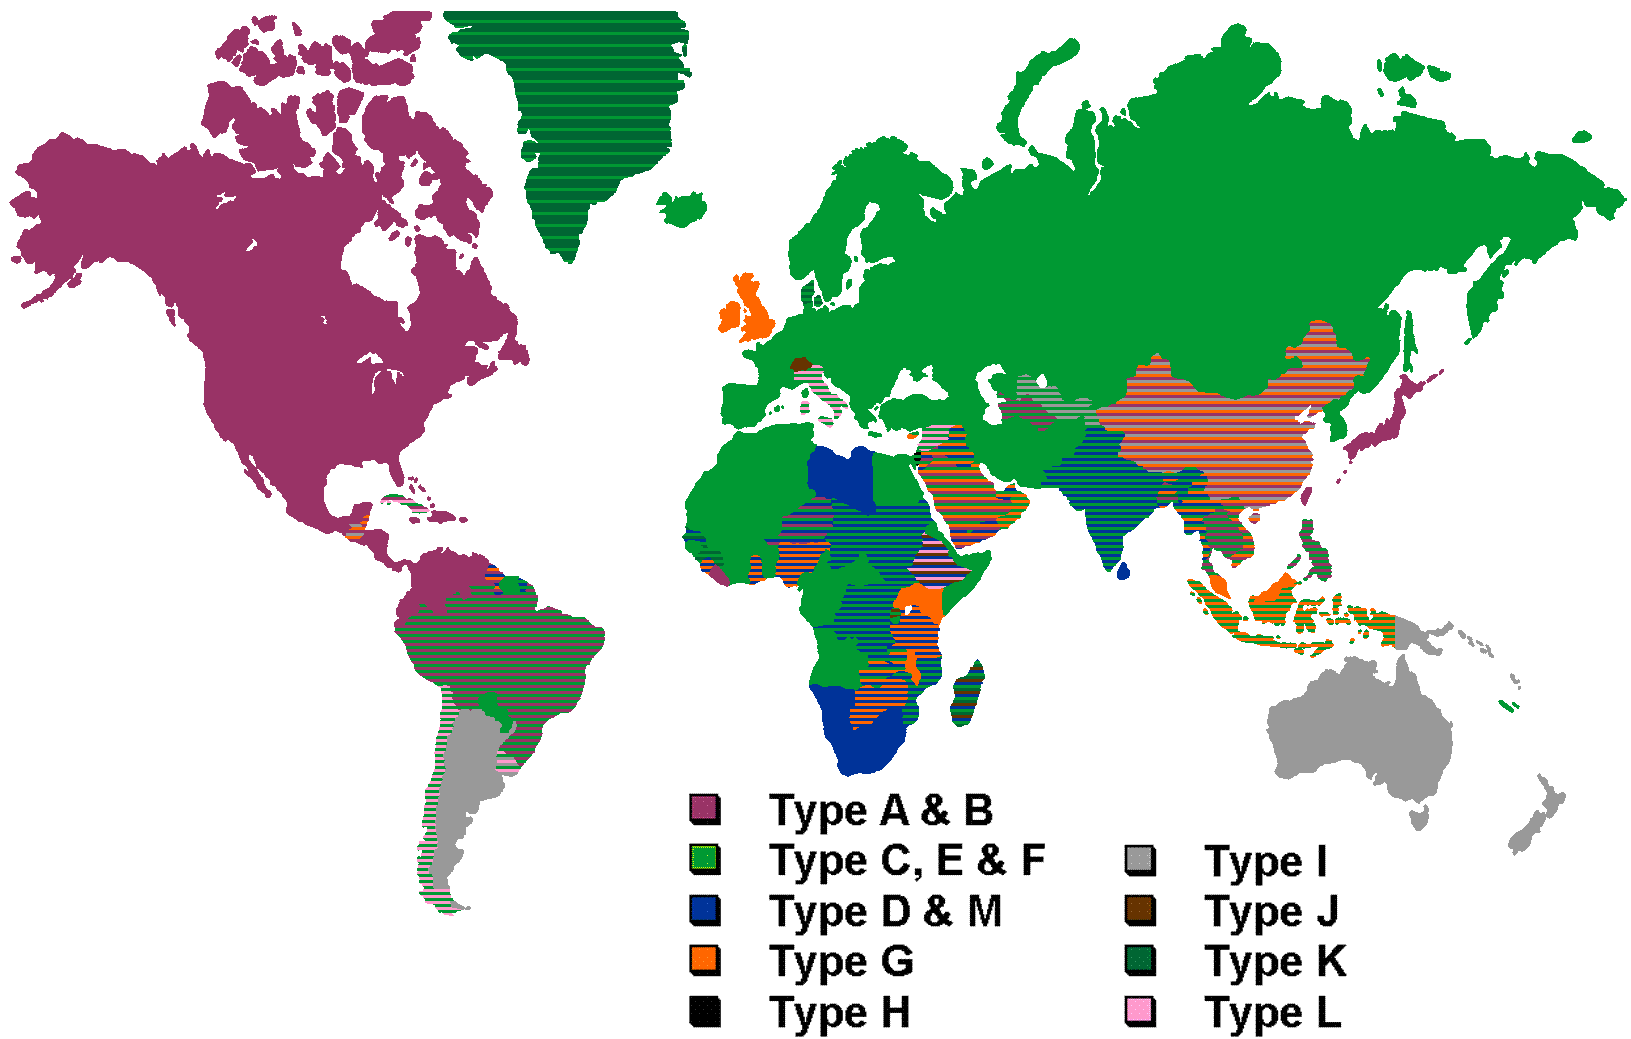 Mapa de tipos de enchufes en el mundo